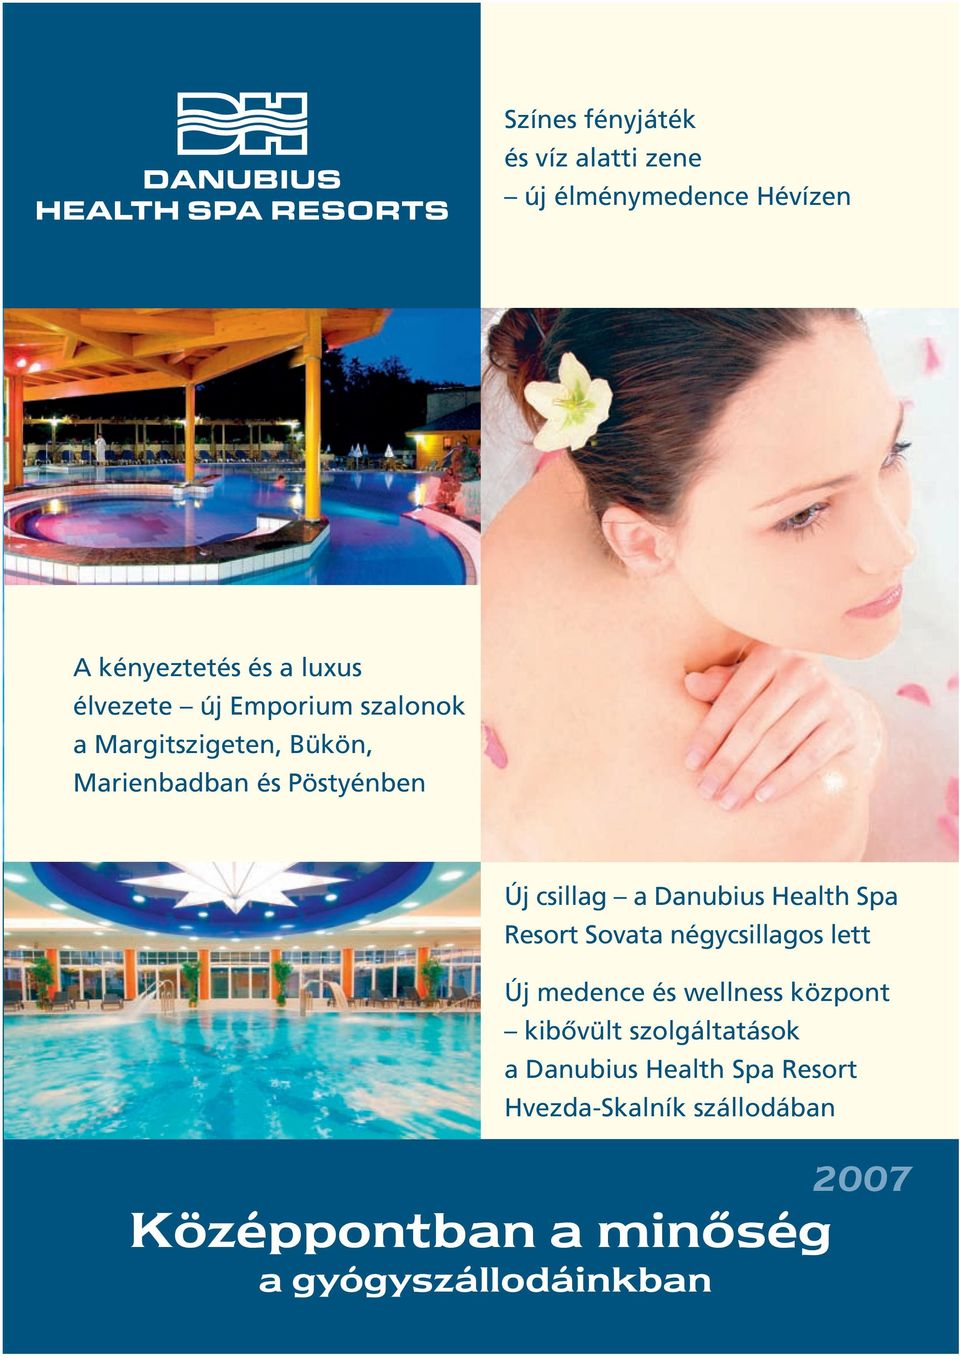 Health Spa Resort Sovata négycsillagos lett Új medence és wellness központ kibôvült szolgáltatások